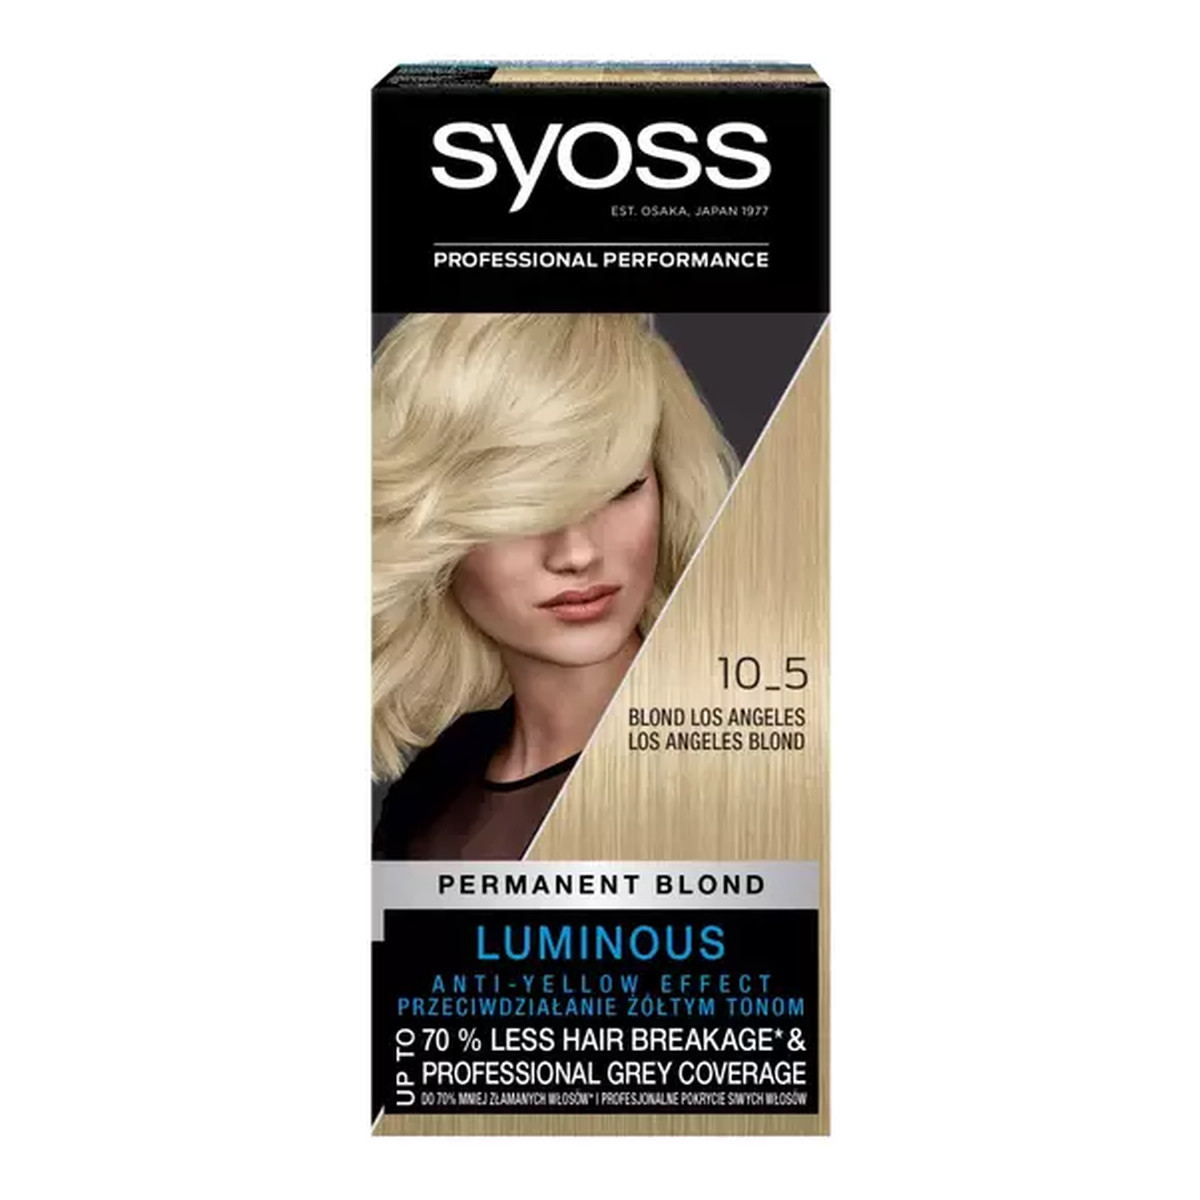 Syoss Color World Stylists Professional Performance Farba Do Włosów 115ml